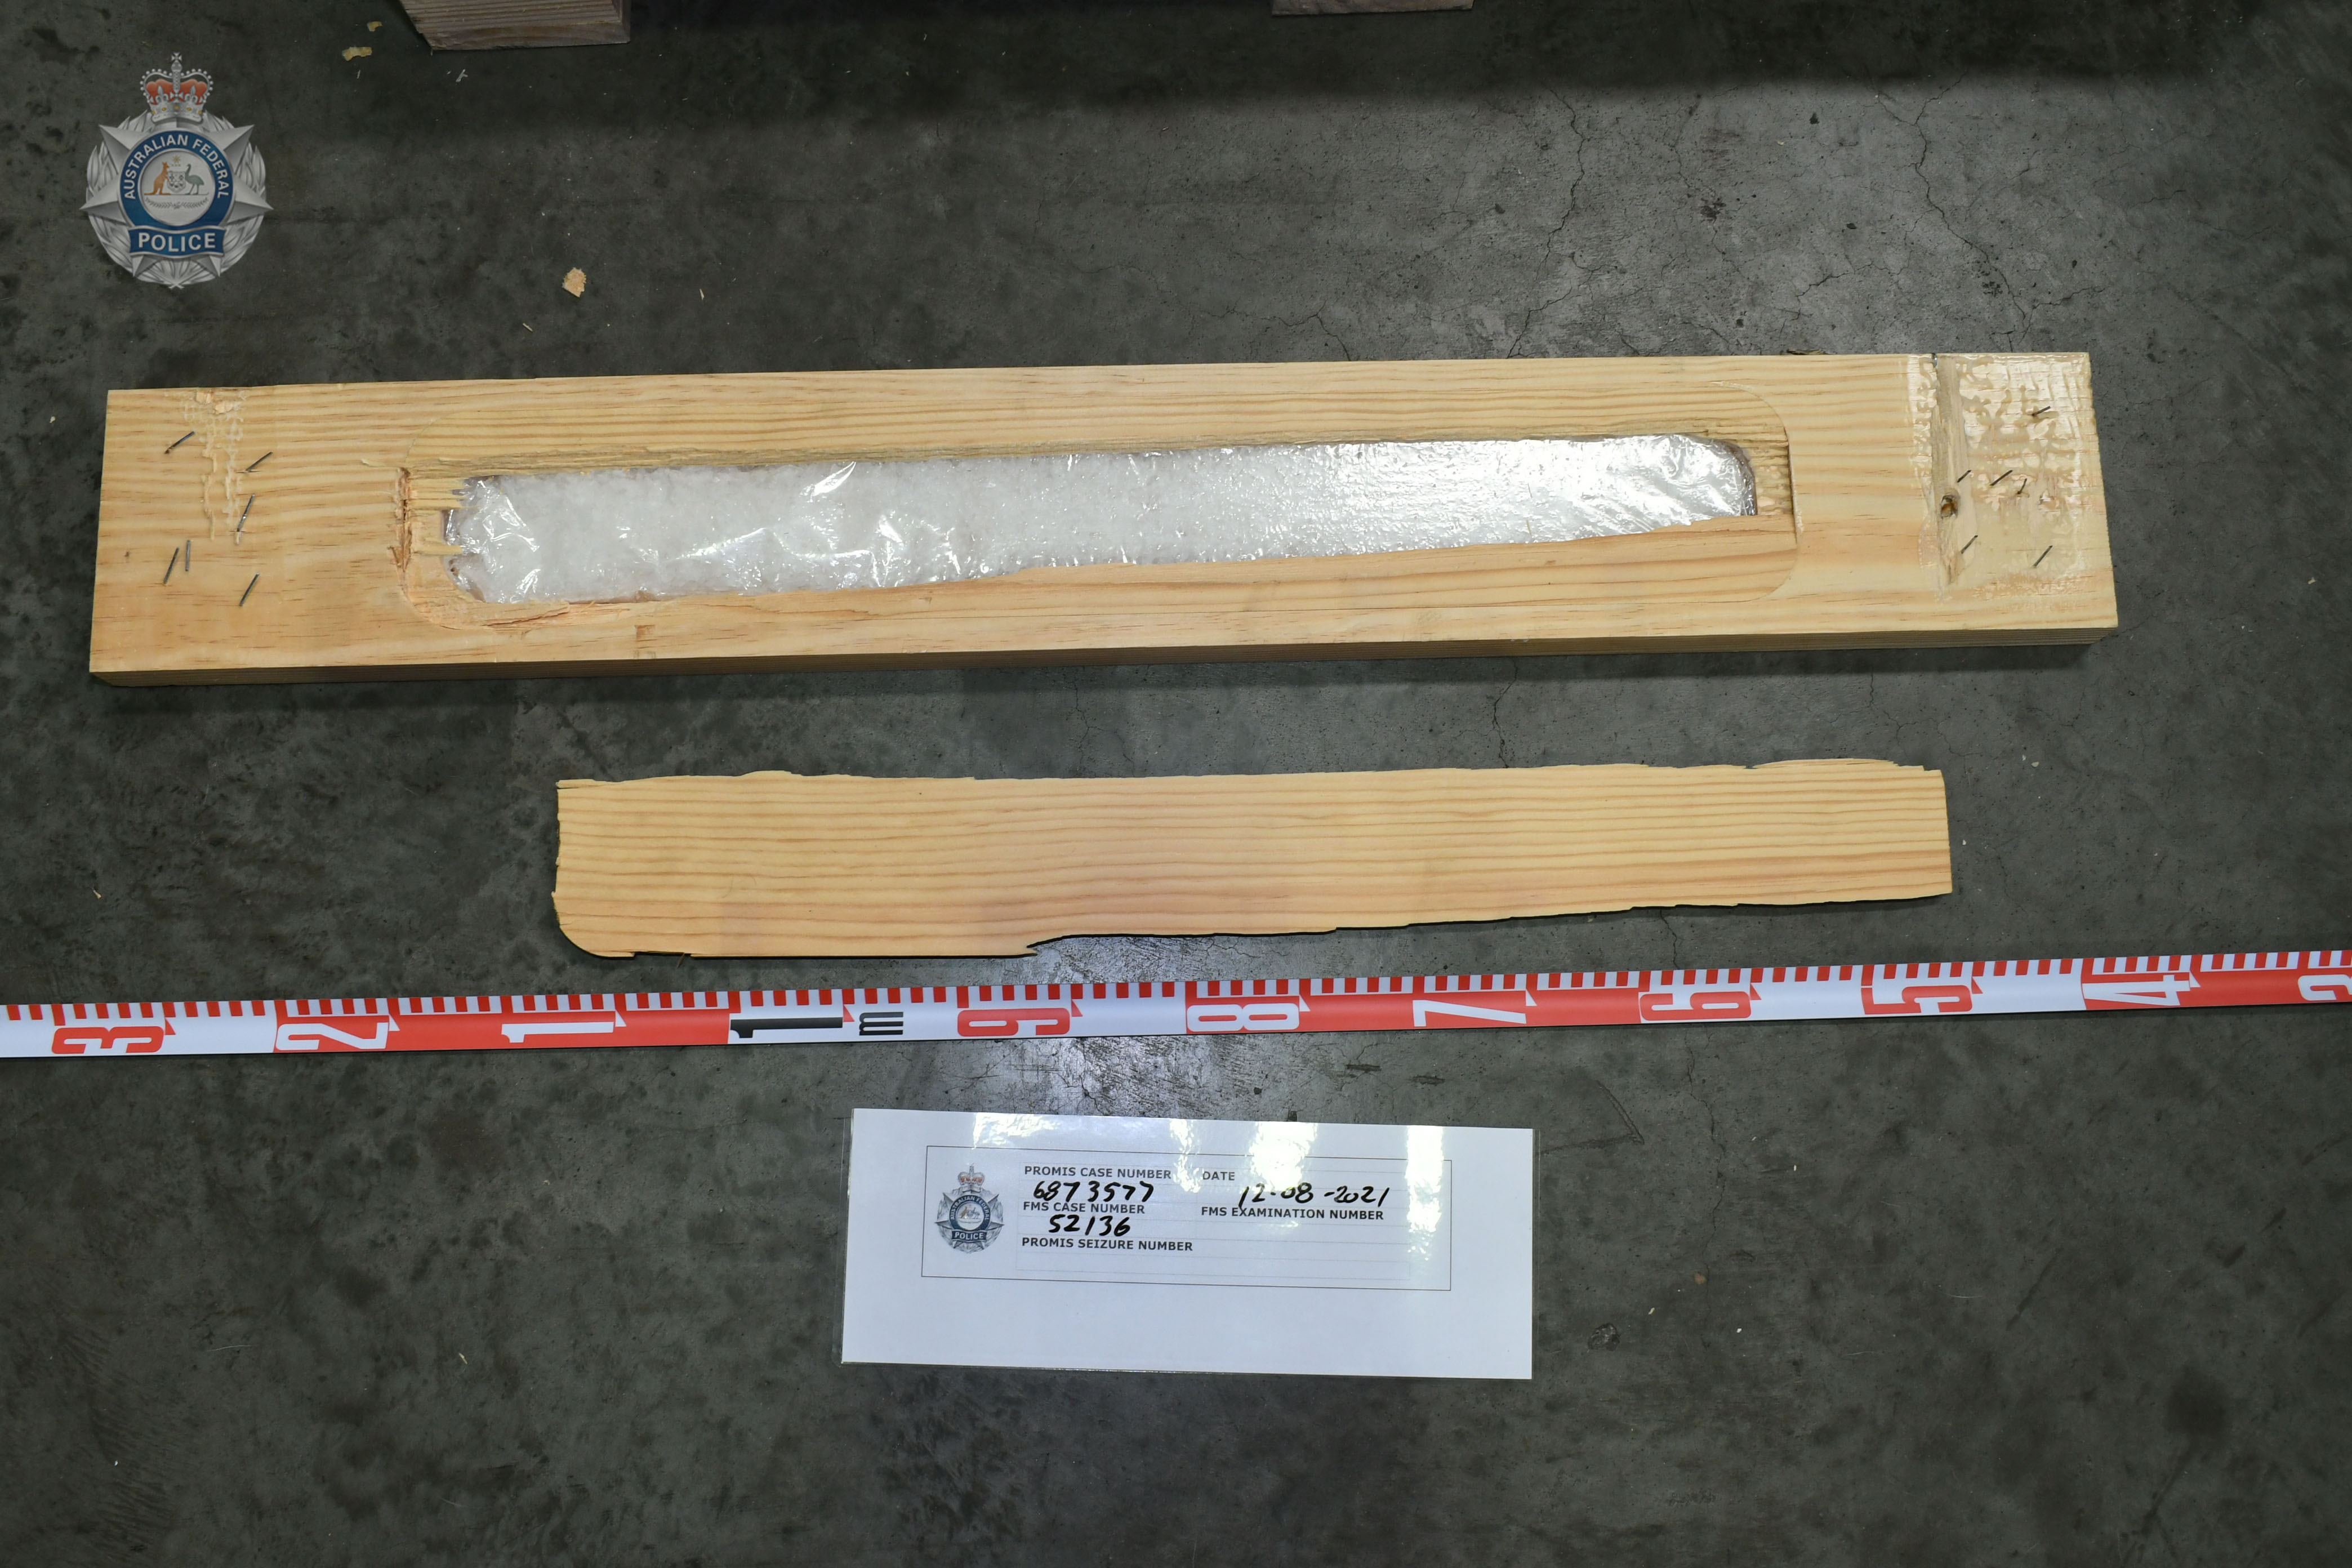 Methamphetamine hidden inside timber pallets.